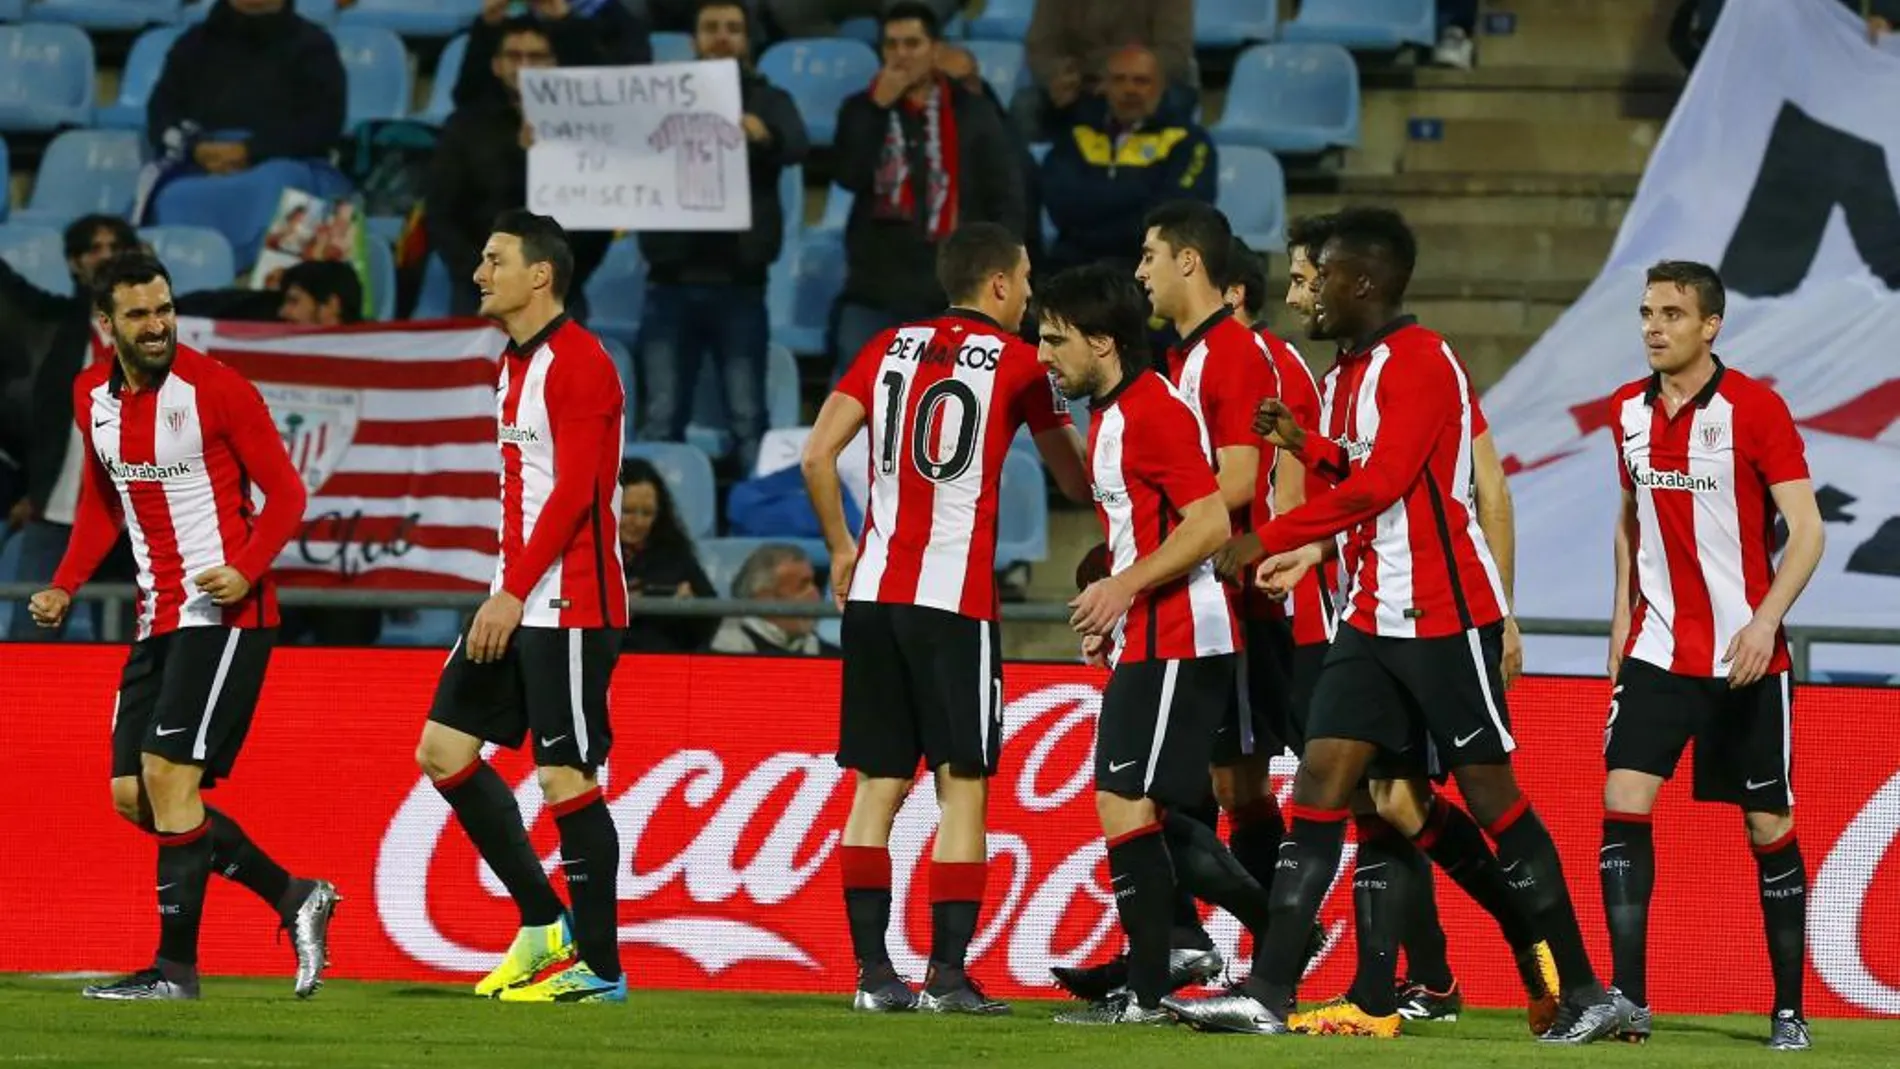 Los jugadores del Athletic Club celebran el primer gol de su equipo, marcado por el delantero Iñaki Williams